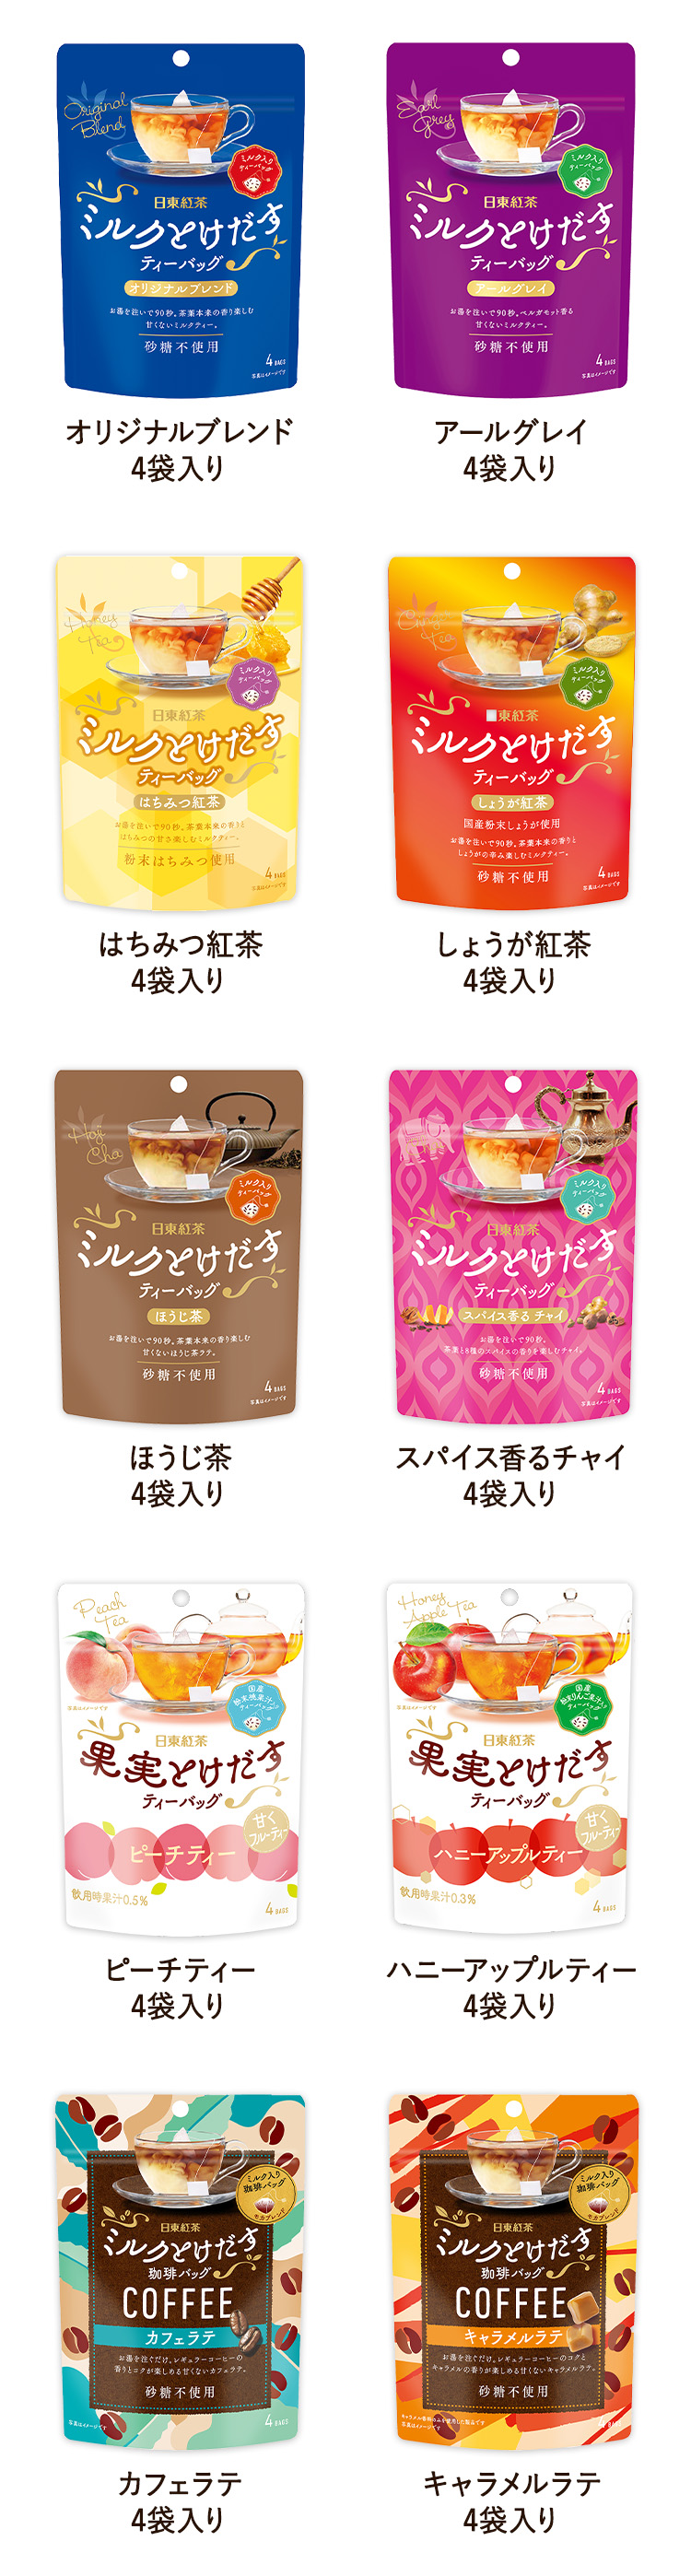 日東紅茶「ミルクとけだすティーバッグとホットに過ごそう♡」プレゼントキャンペーン対象商品